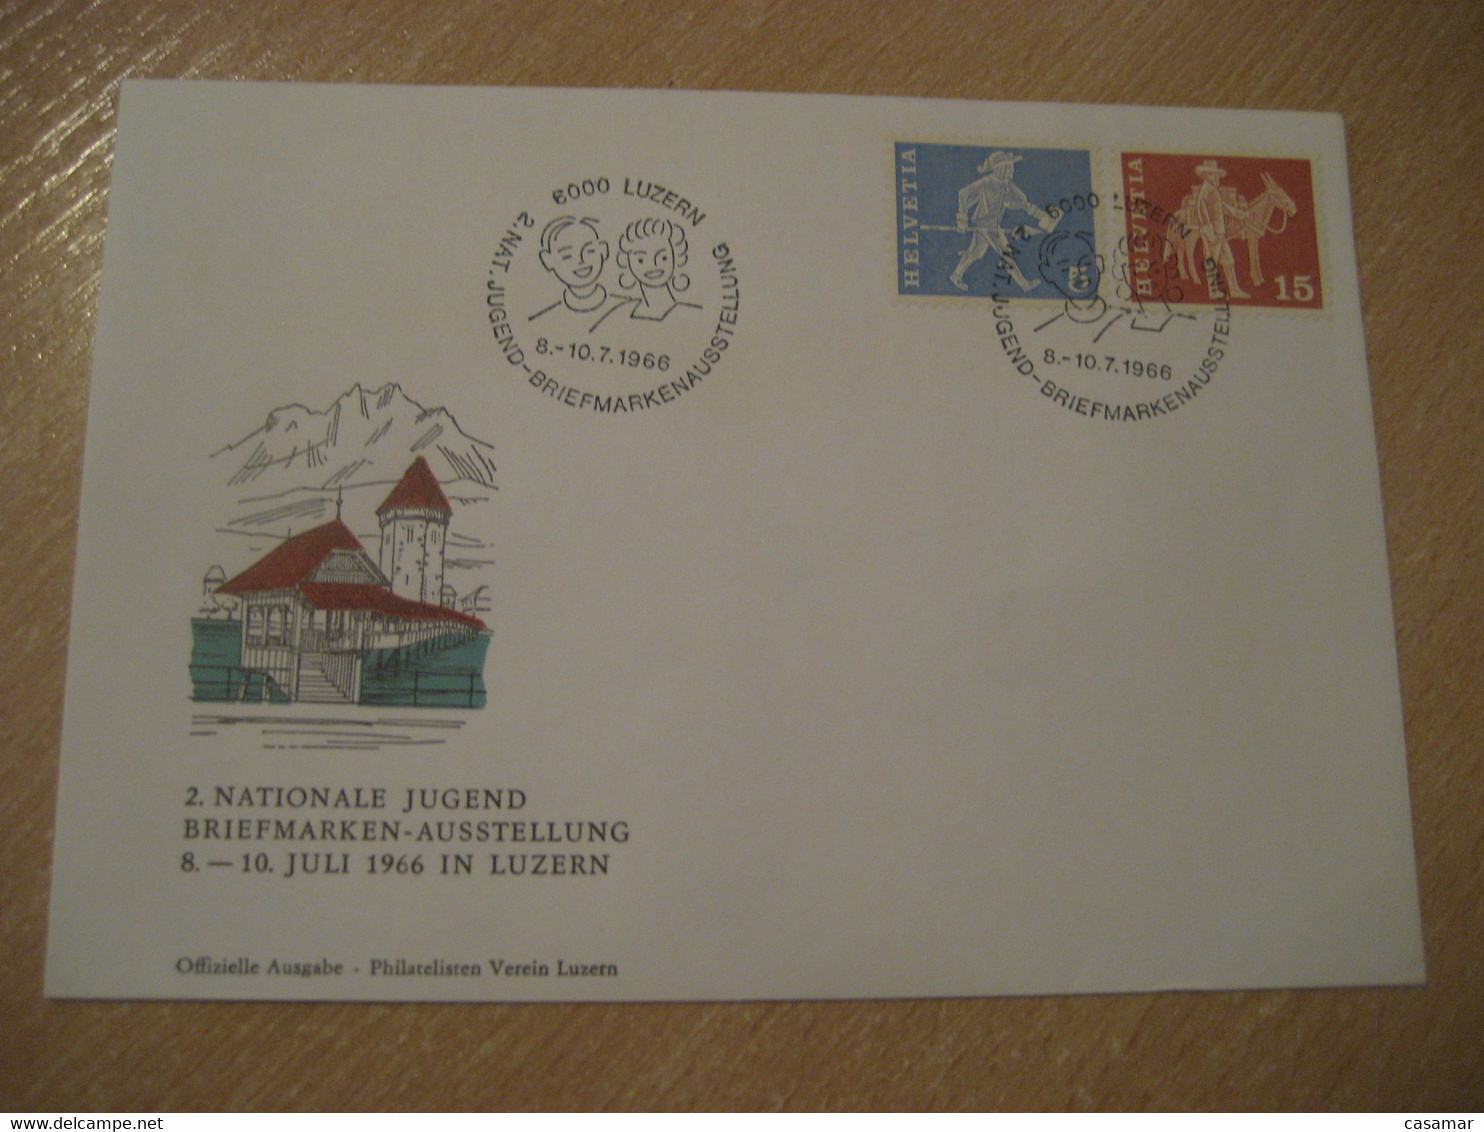 LUZERN 1966 Donkey Donkeys Stamp Jugend Briefmarken Cancel Bridge Water Tower Cover SWITZERLAND Lucerne - Donkeys